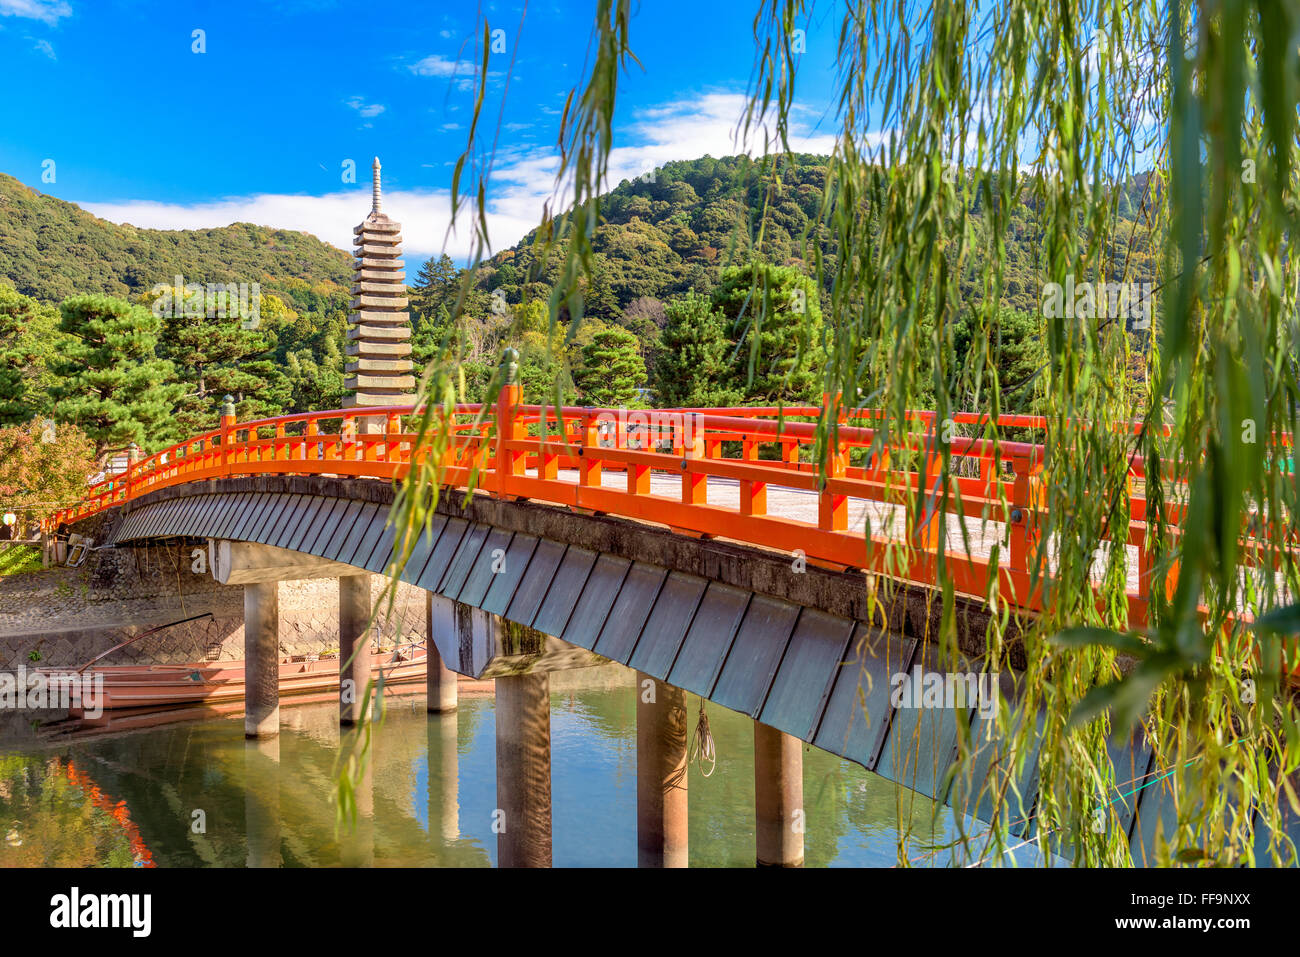 Uji, Kyoto, Japan at the Uji River and thirteen storied pagoda. Stock Photo